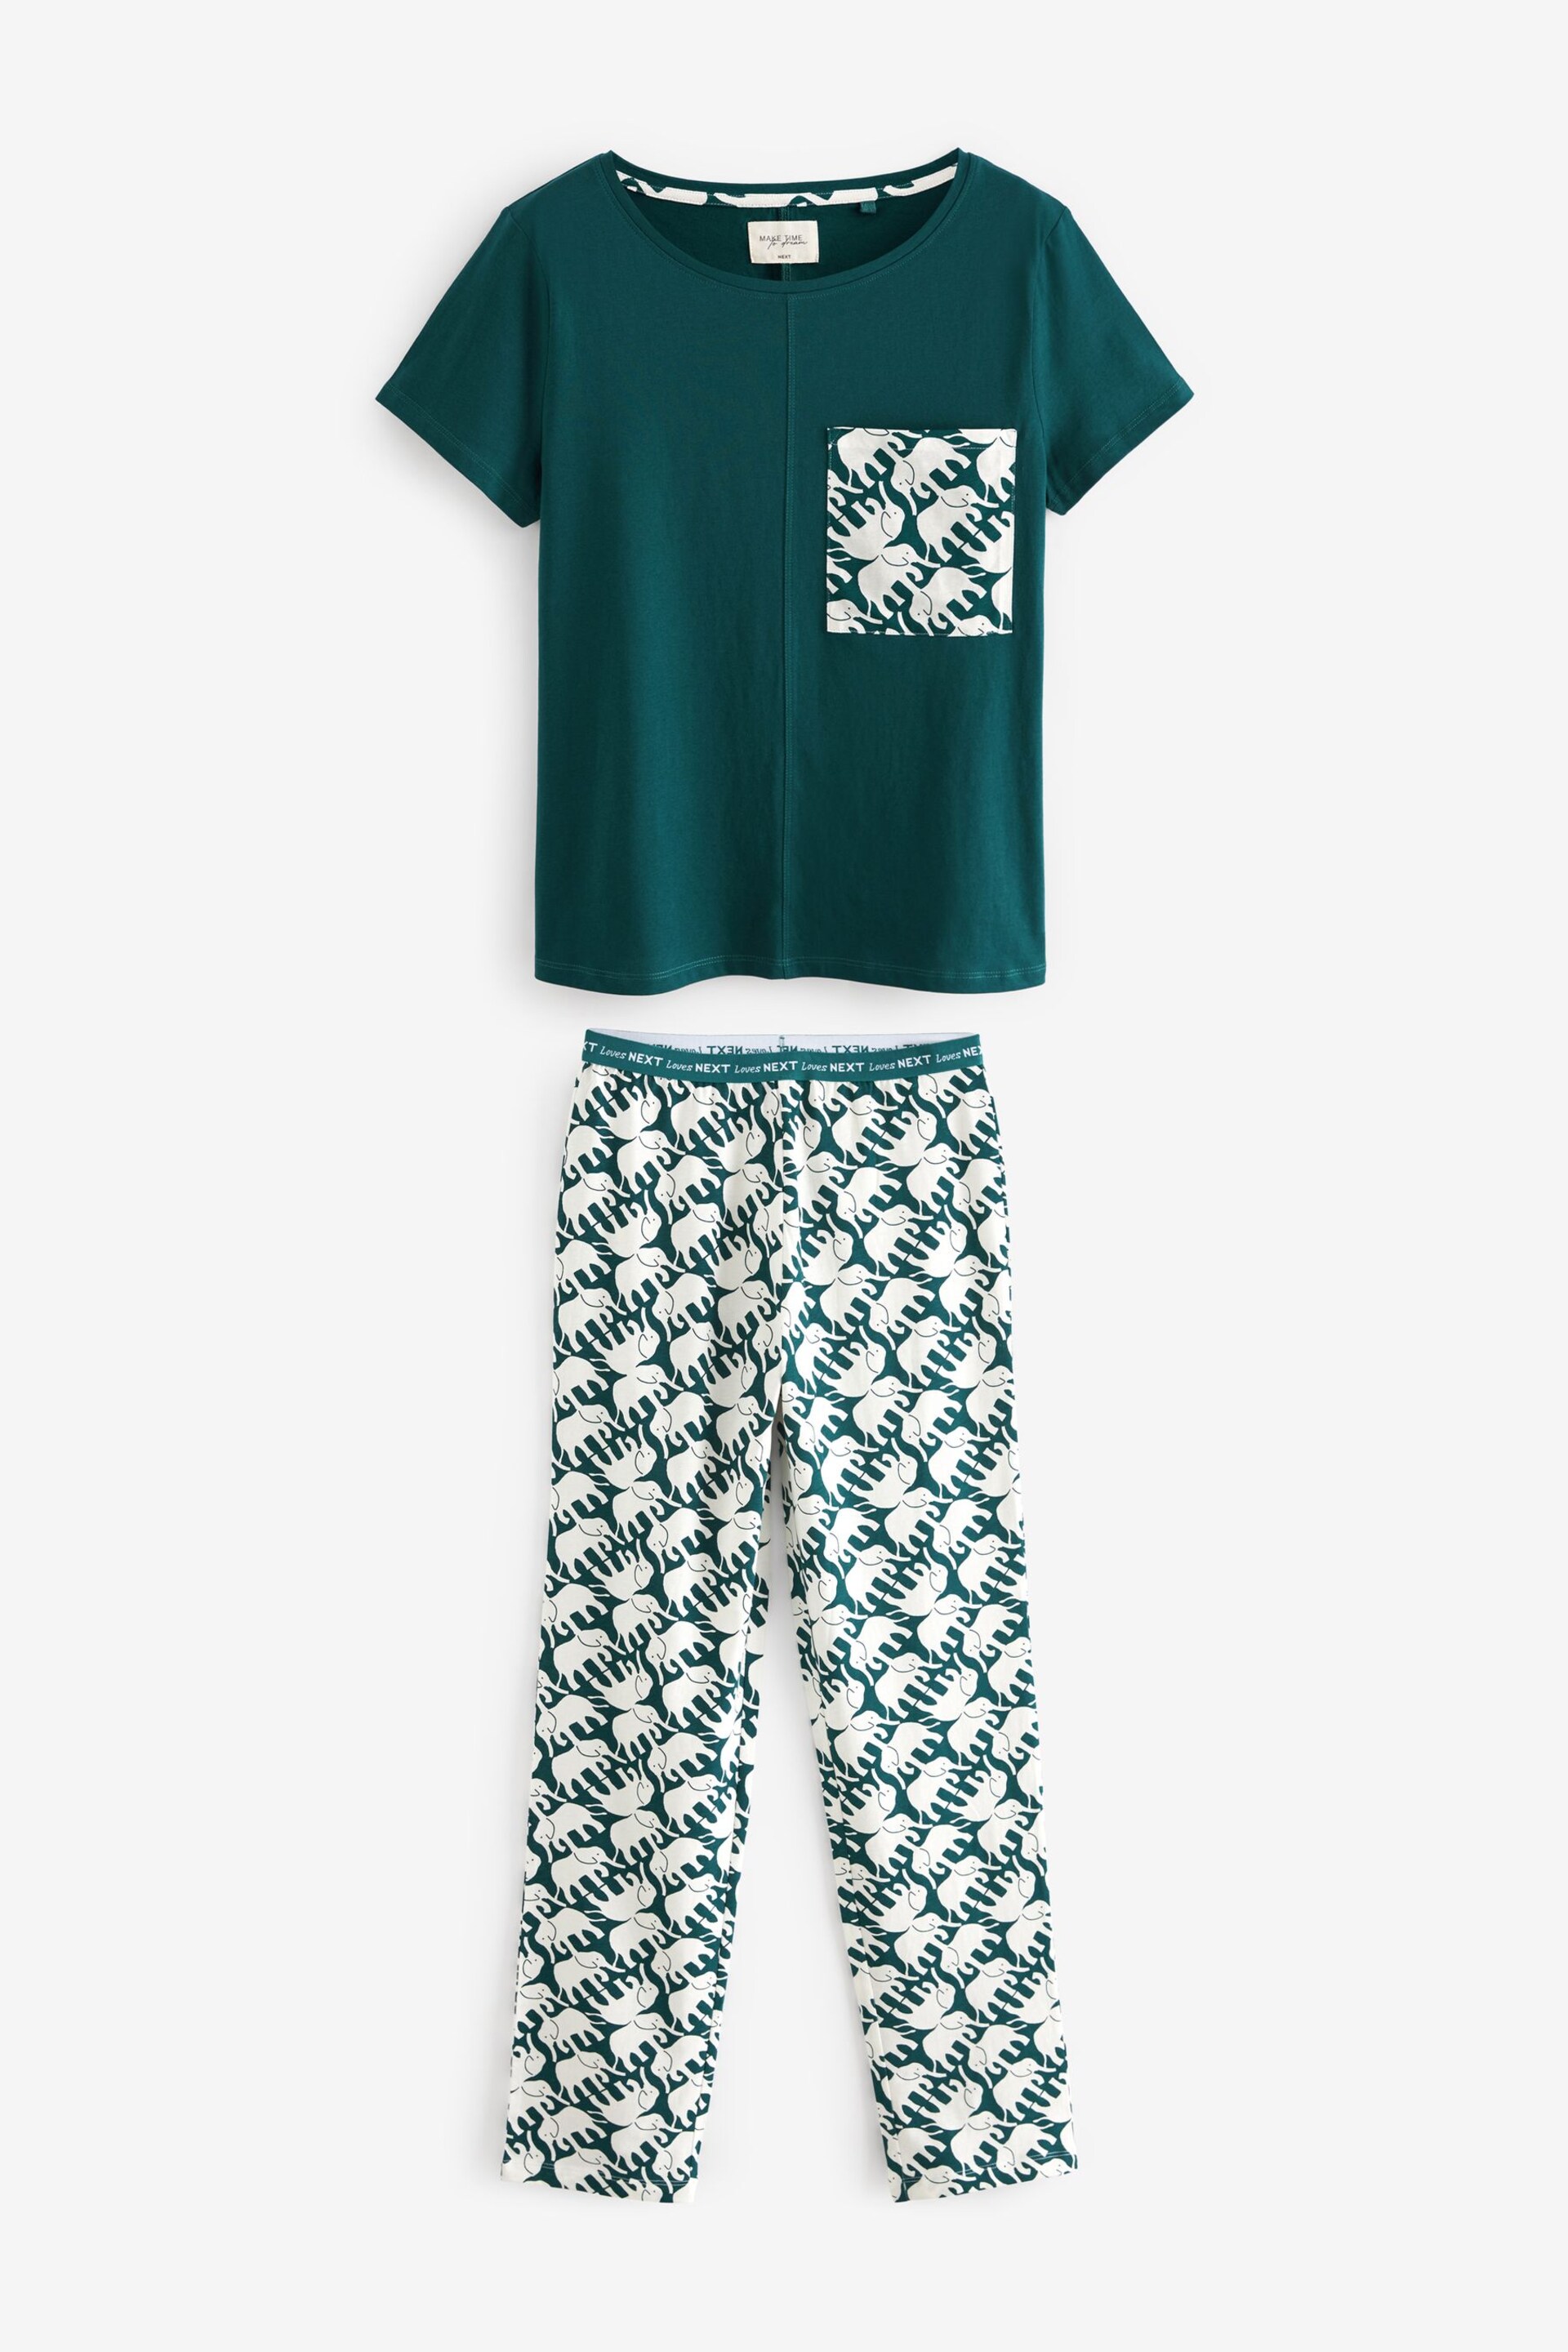 Teal Elephant Cotton Short Sleeve Pyjamas - Image 5 of 8